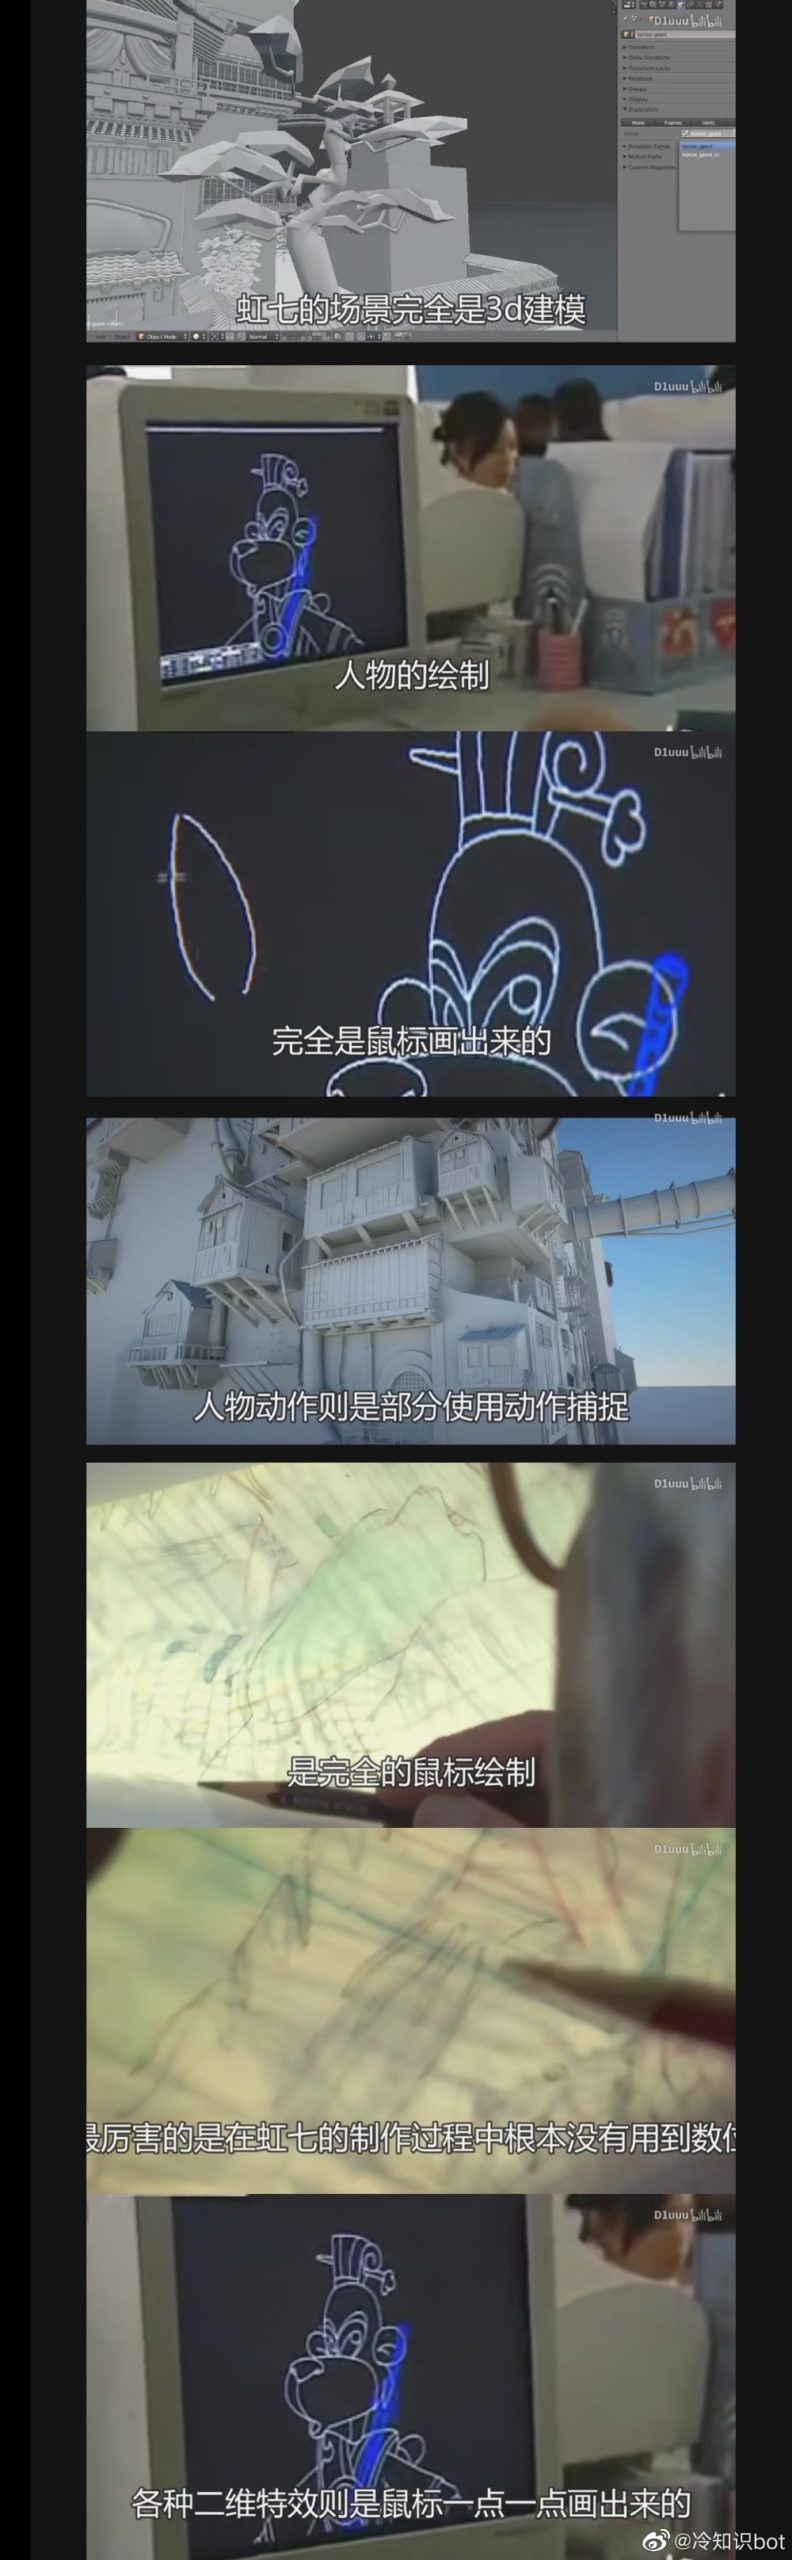 冷知识：”国产动画《虹猫蓝兔七侠传》的画面均是鼠标绘制 ​​​​